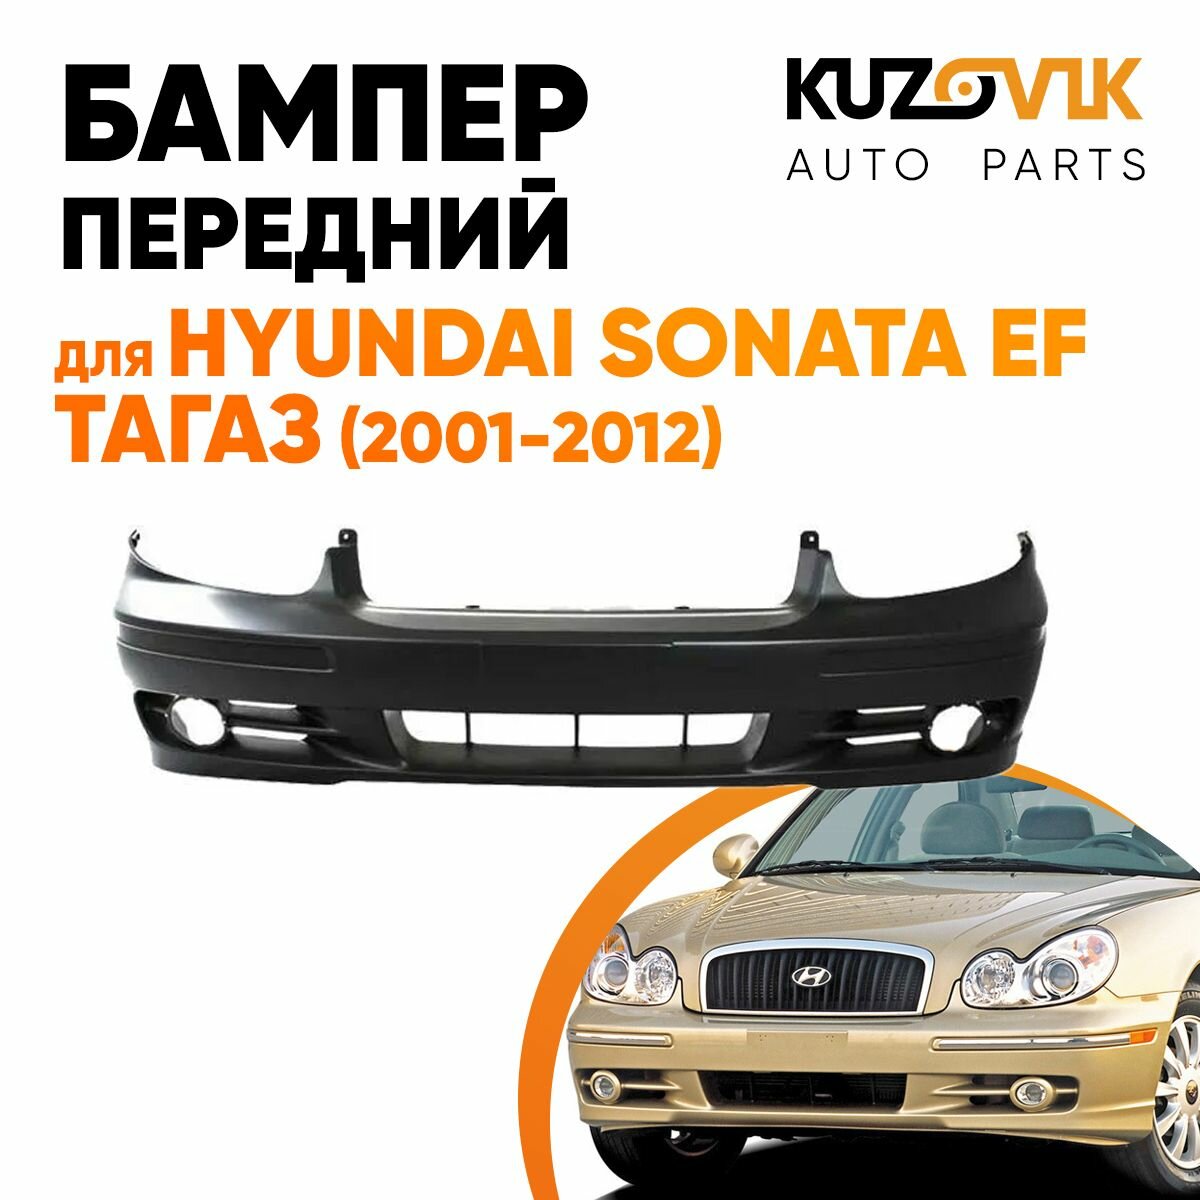 Бампер передний Hyundai Sonata EF Тагаз (2001-2012) с отверстиями под молдинг